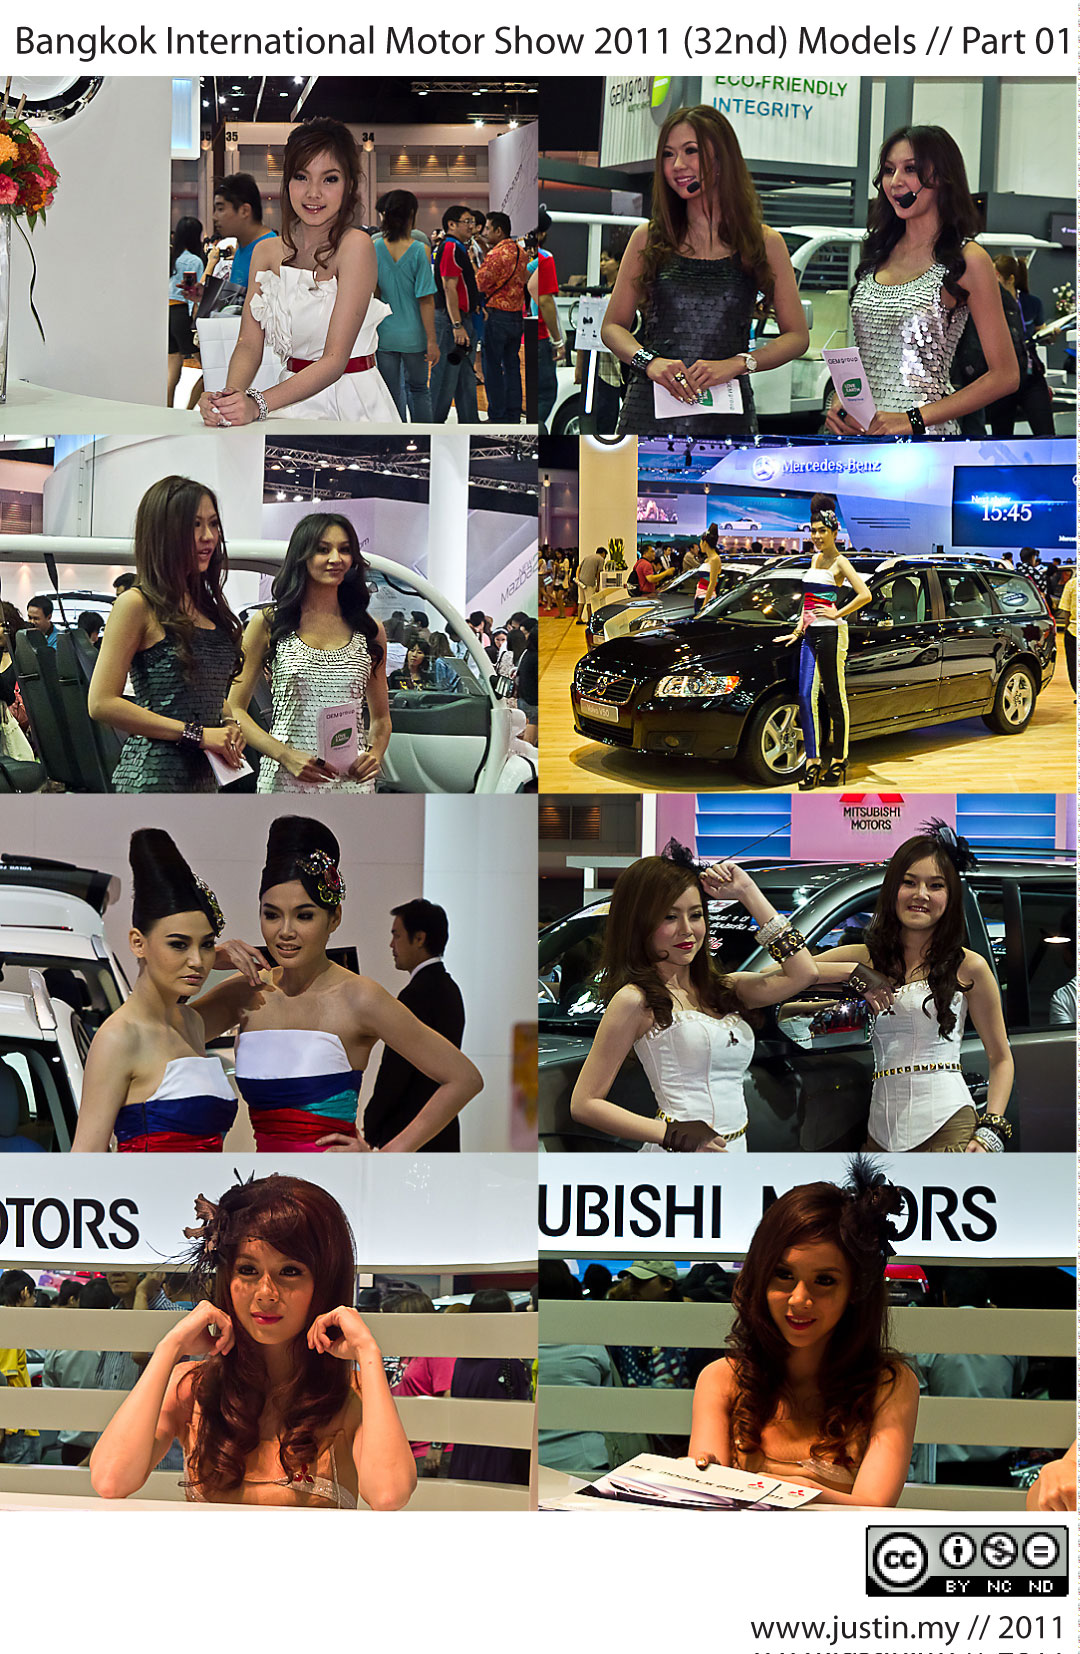 http://www.thamai.net/wp-content/uploads/2011/03/Bangkok-International-Motor-Show-2011-Model-01.jpg